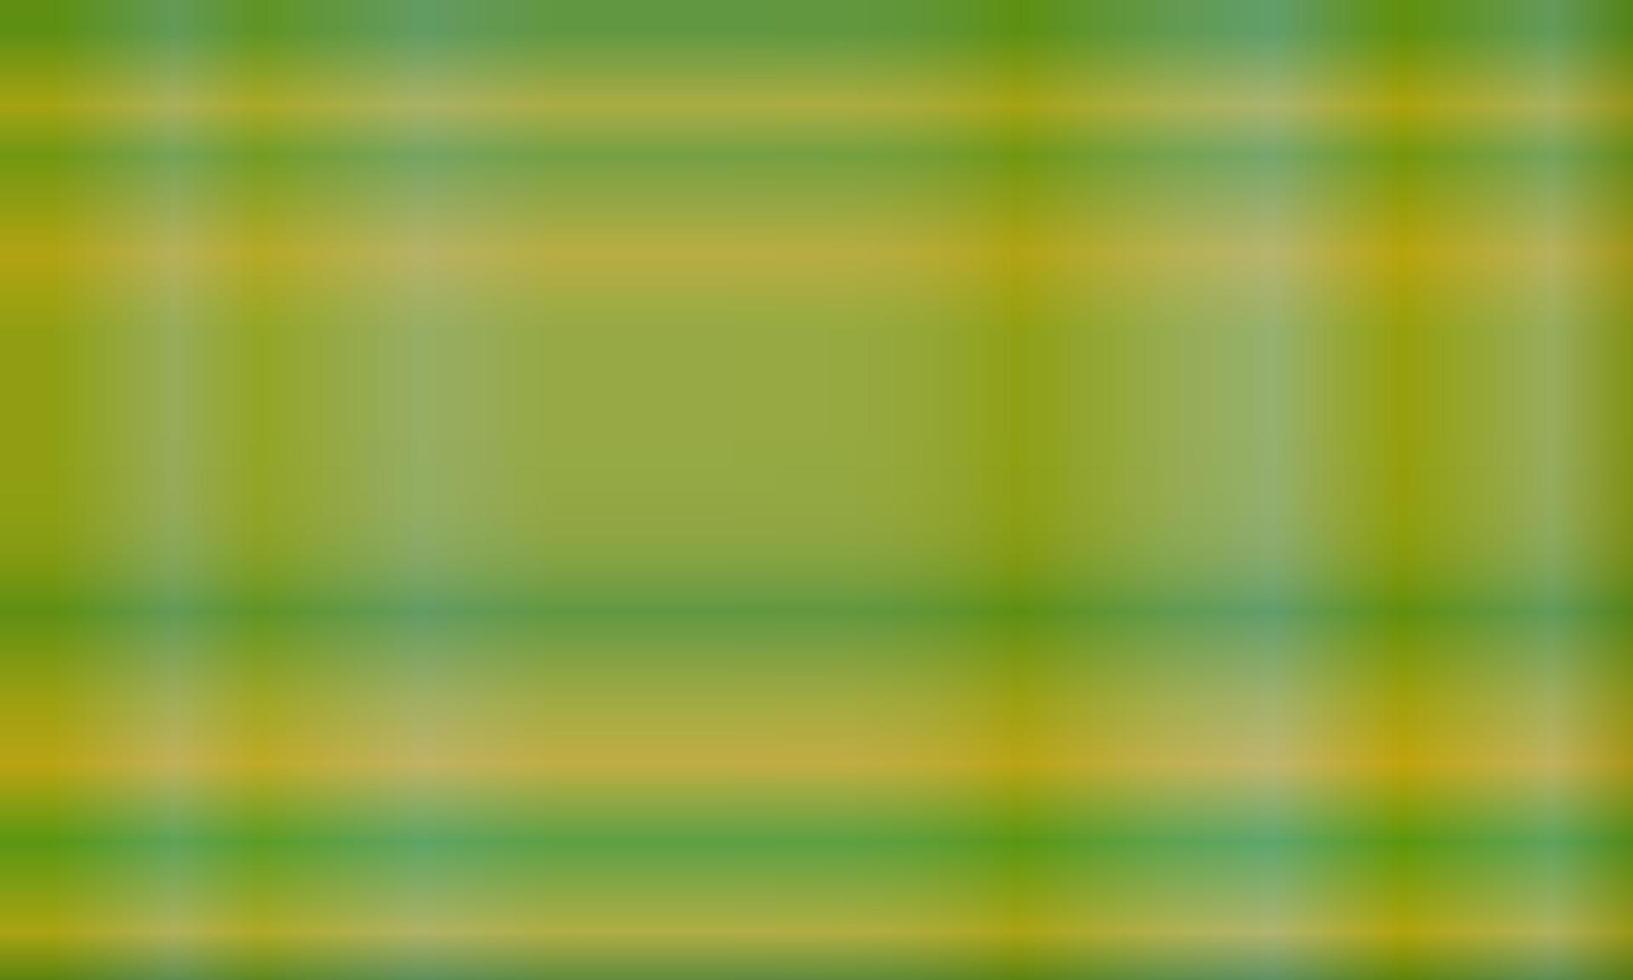 dunkelgrüner und gelber abstrakter hintergrund mit hellen linien vertikal und horizontal. Muster, Farbverlauf, Unschärfe, moderner und farbenfroher Stil. Verwendung für Hintergrund, Hintergrund, Hintergrundbild, Banner oder Flyer vektor